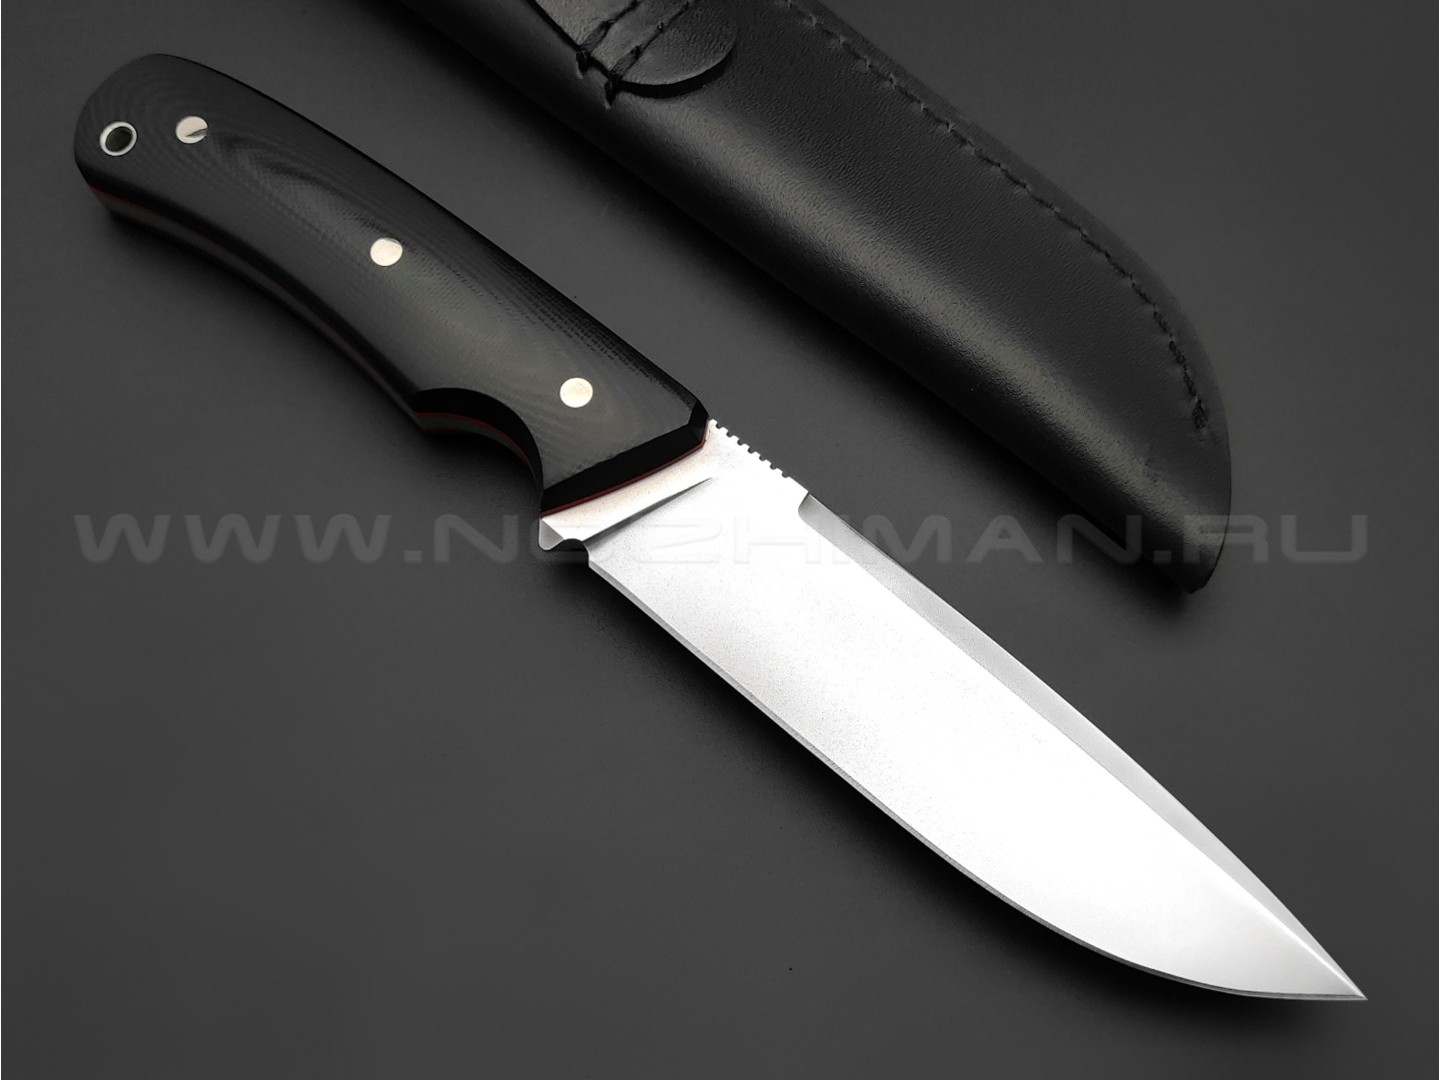 Кметь нож "Акула" сталь N690, рукоять G10 black